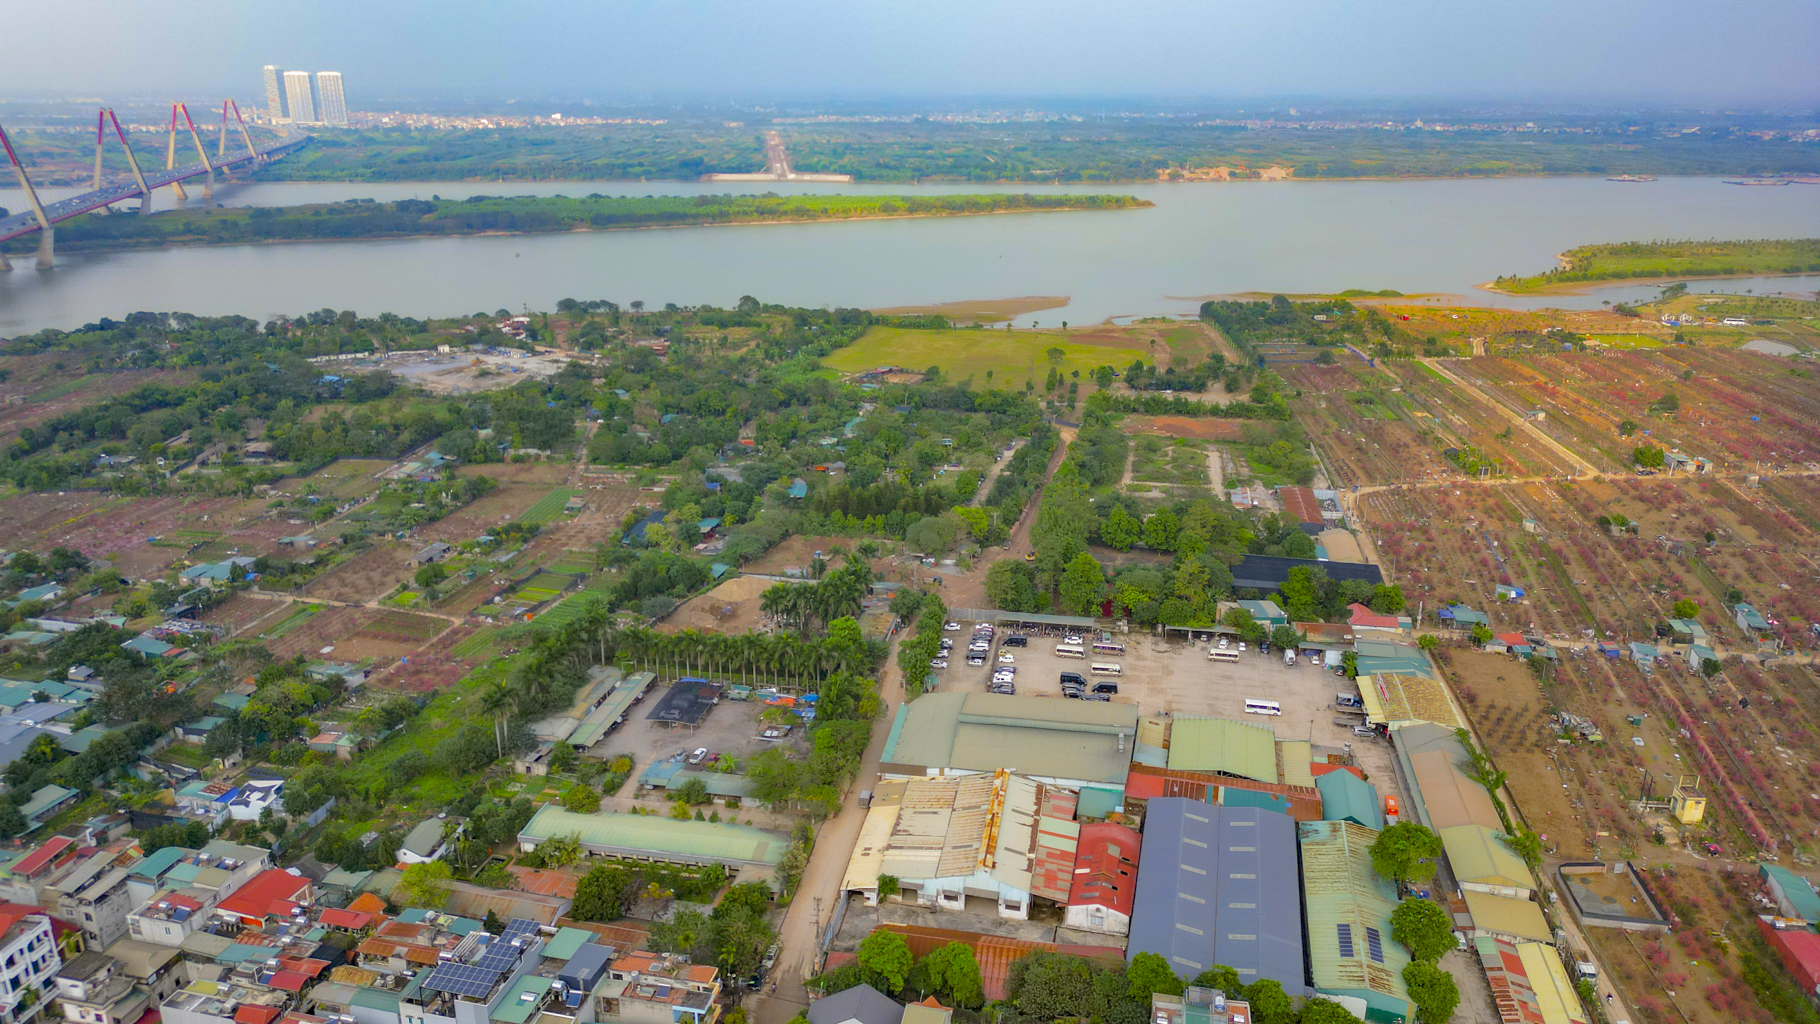 Quỹ đất lớn duy nhất còn sót lại ở Hà Nội, rộng bằng 8 quận nội thành, có nơi cách hồ Gươm chỉ vài phút đi xe- Ảnh 4.